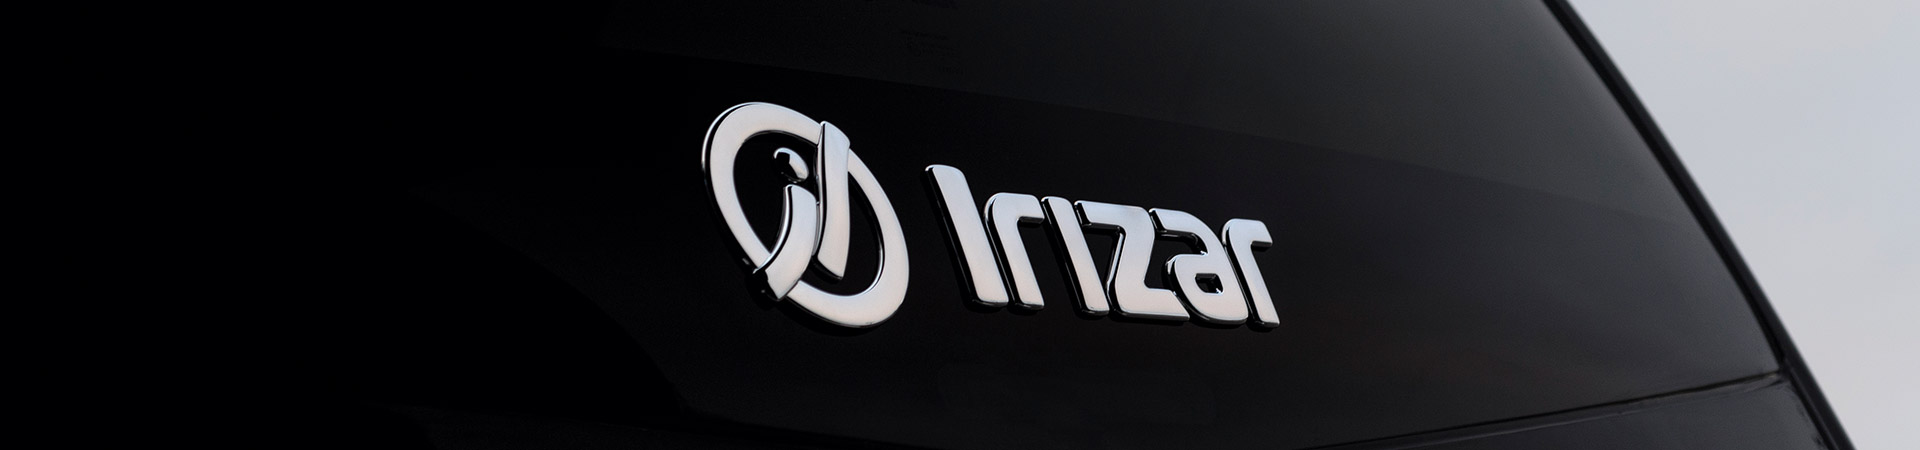 La marque Irizar